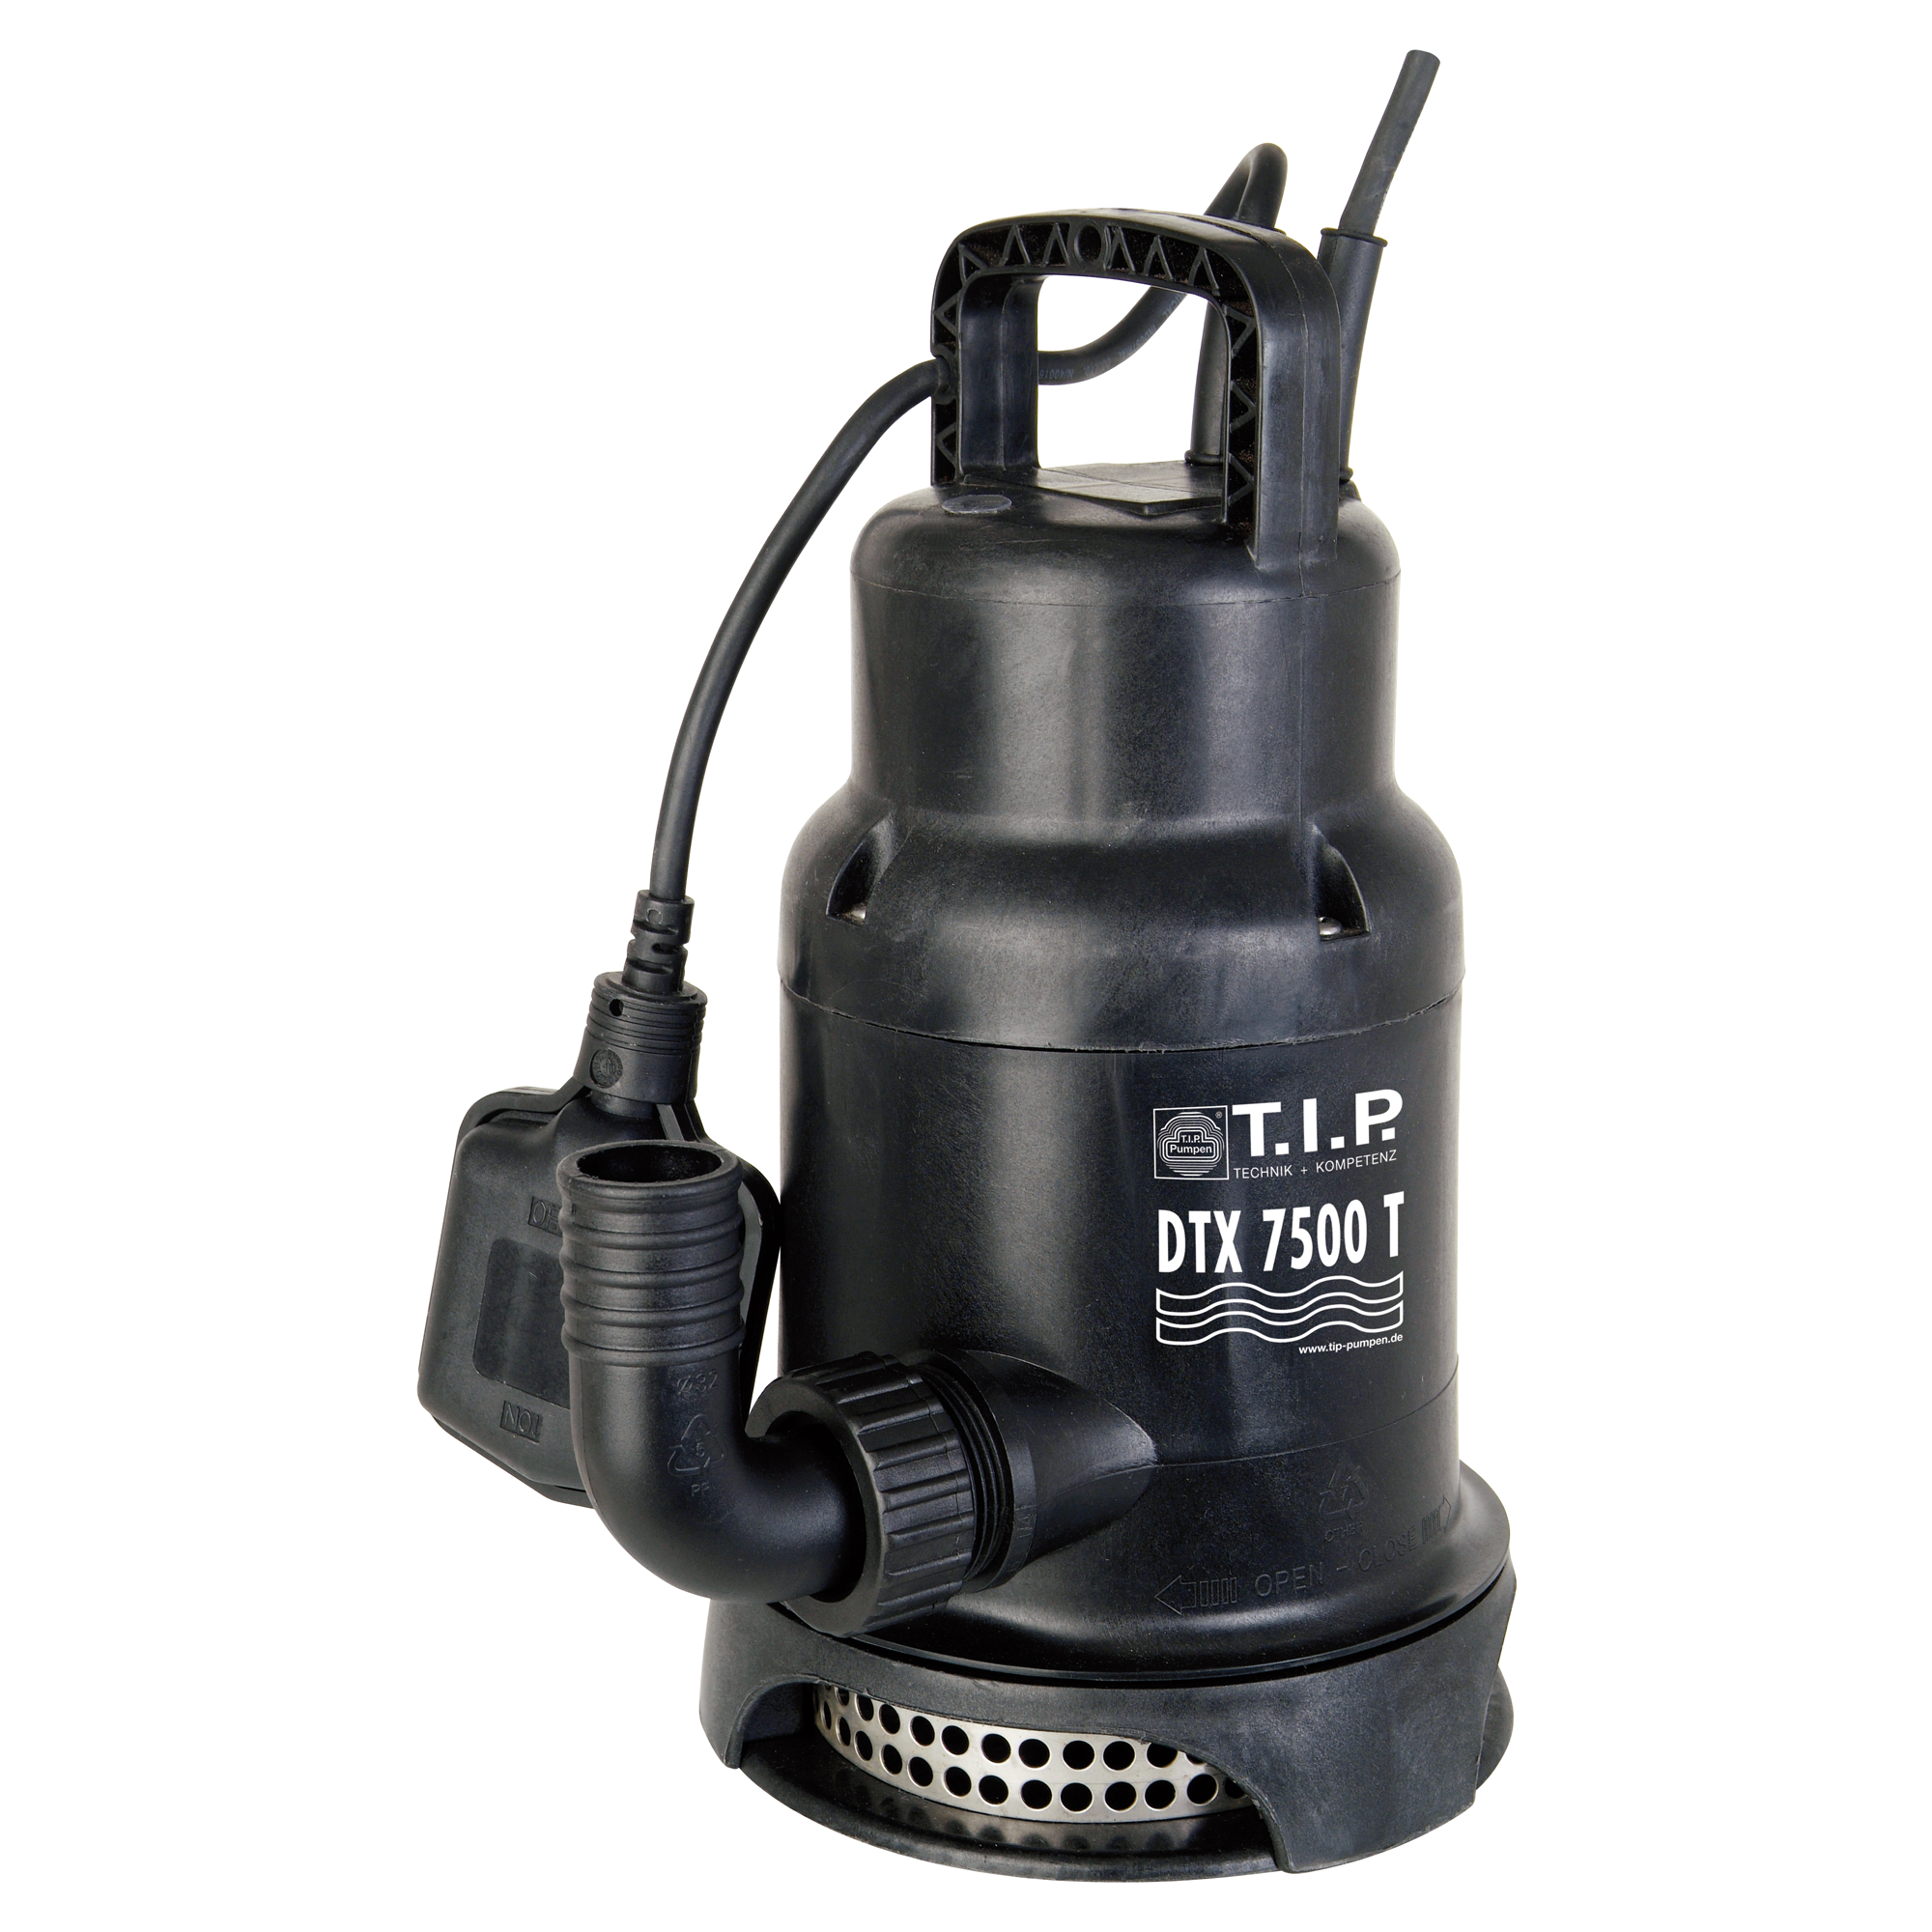 Schmutzwassertauchpumpe DTX 7500 T + product picture